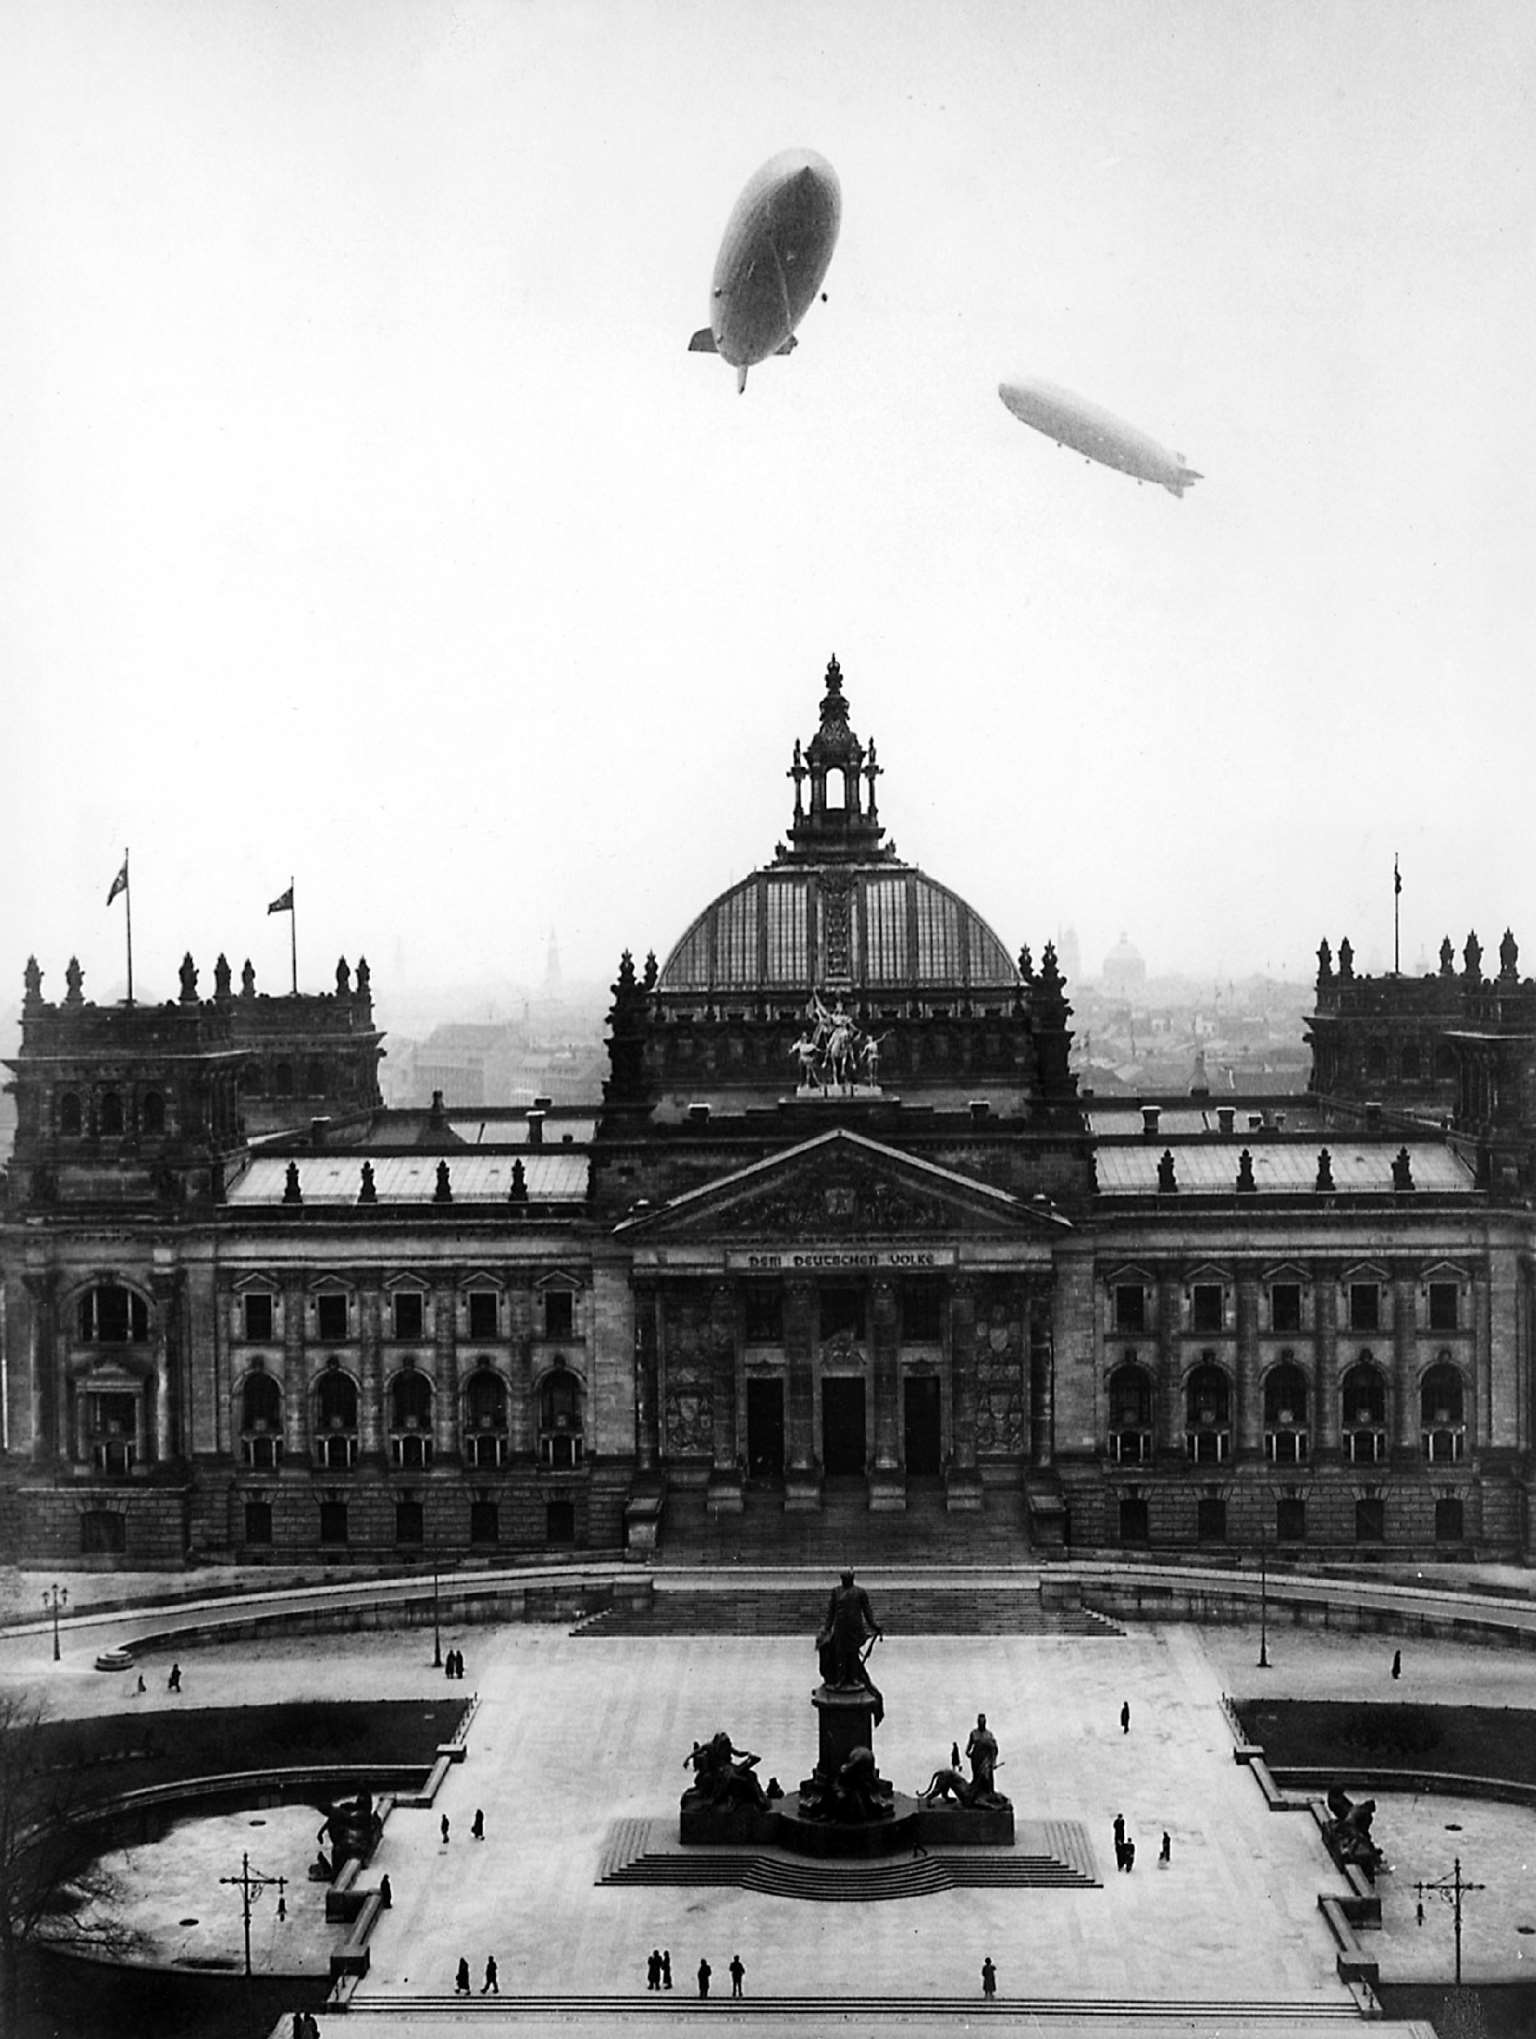 1936年3月28日,"兴登堡号"与"齐柏林伯爵号"飞艇飞跃国会大厦.